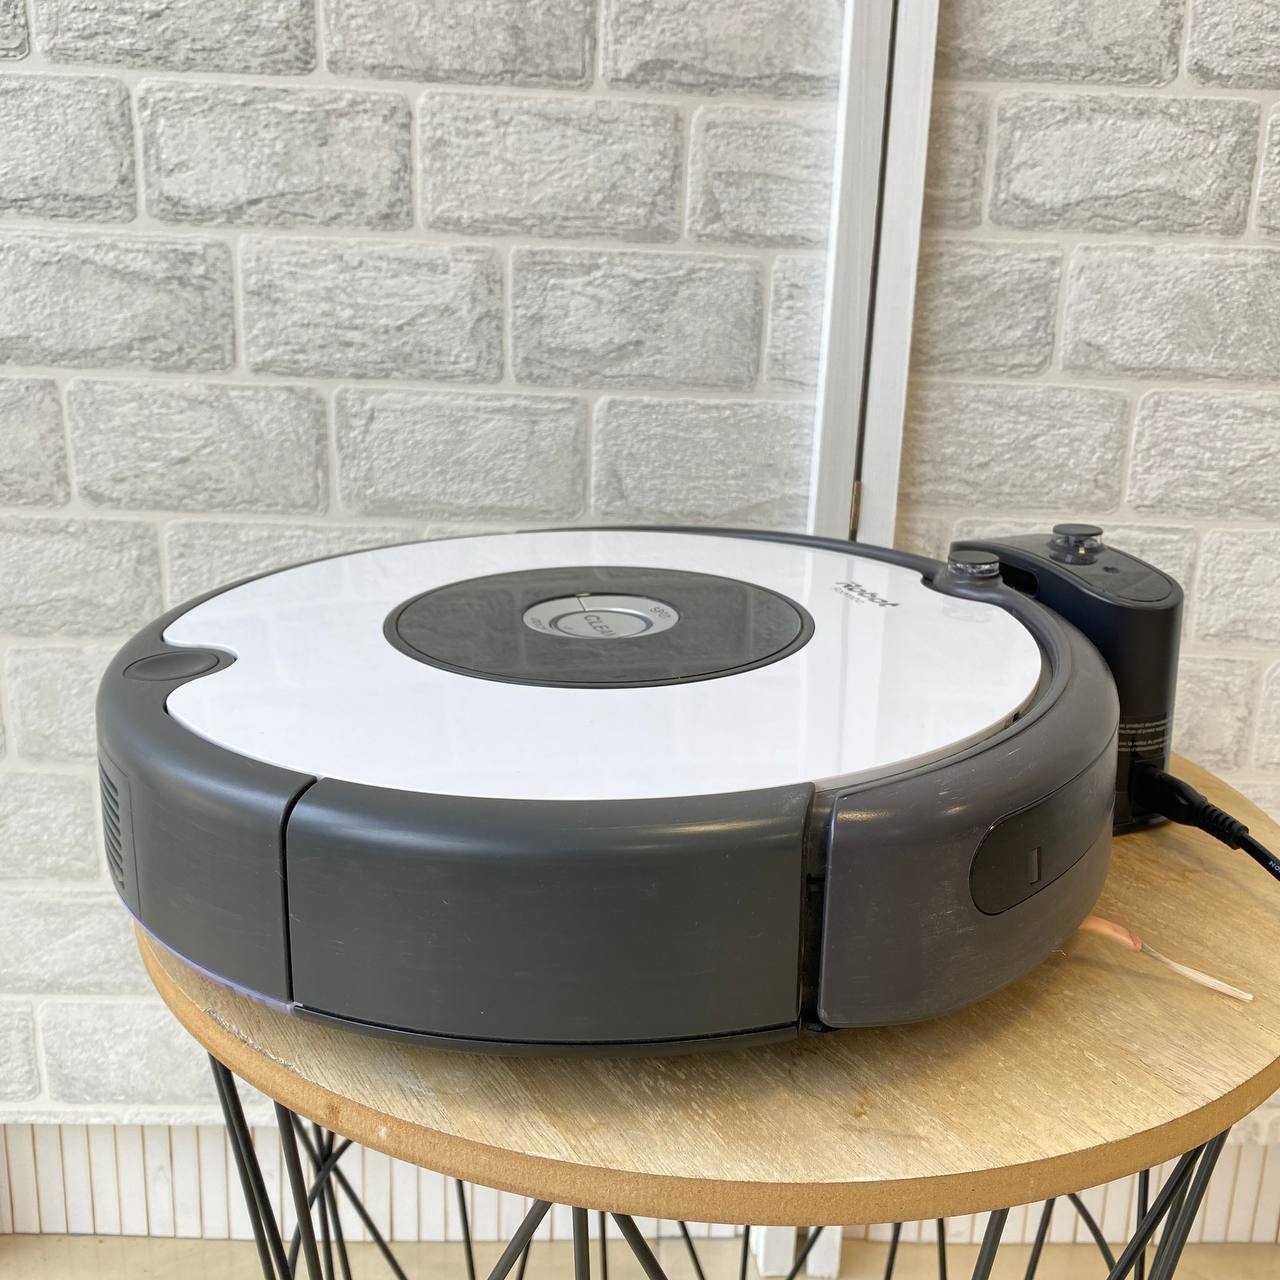 Робот прахосмукачка iRobot Roomba 605 AeroVac 3 режима 2 четки iAdapt